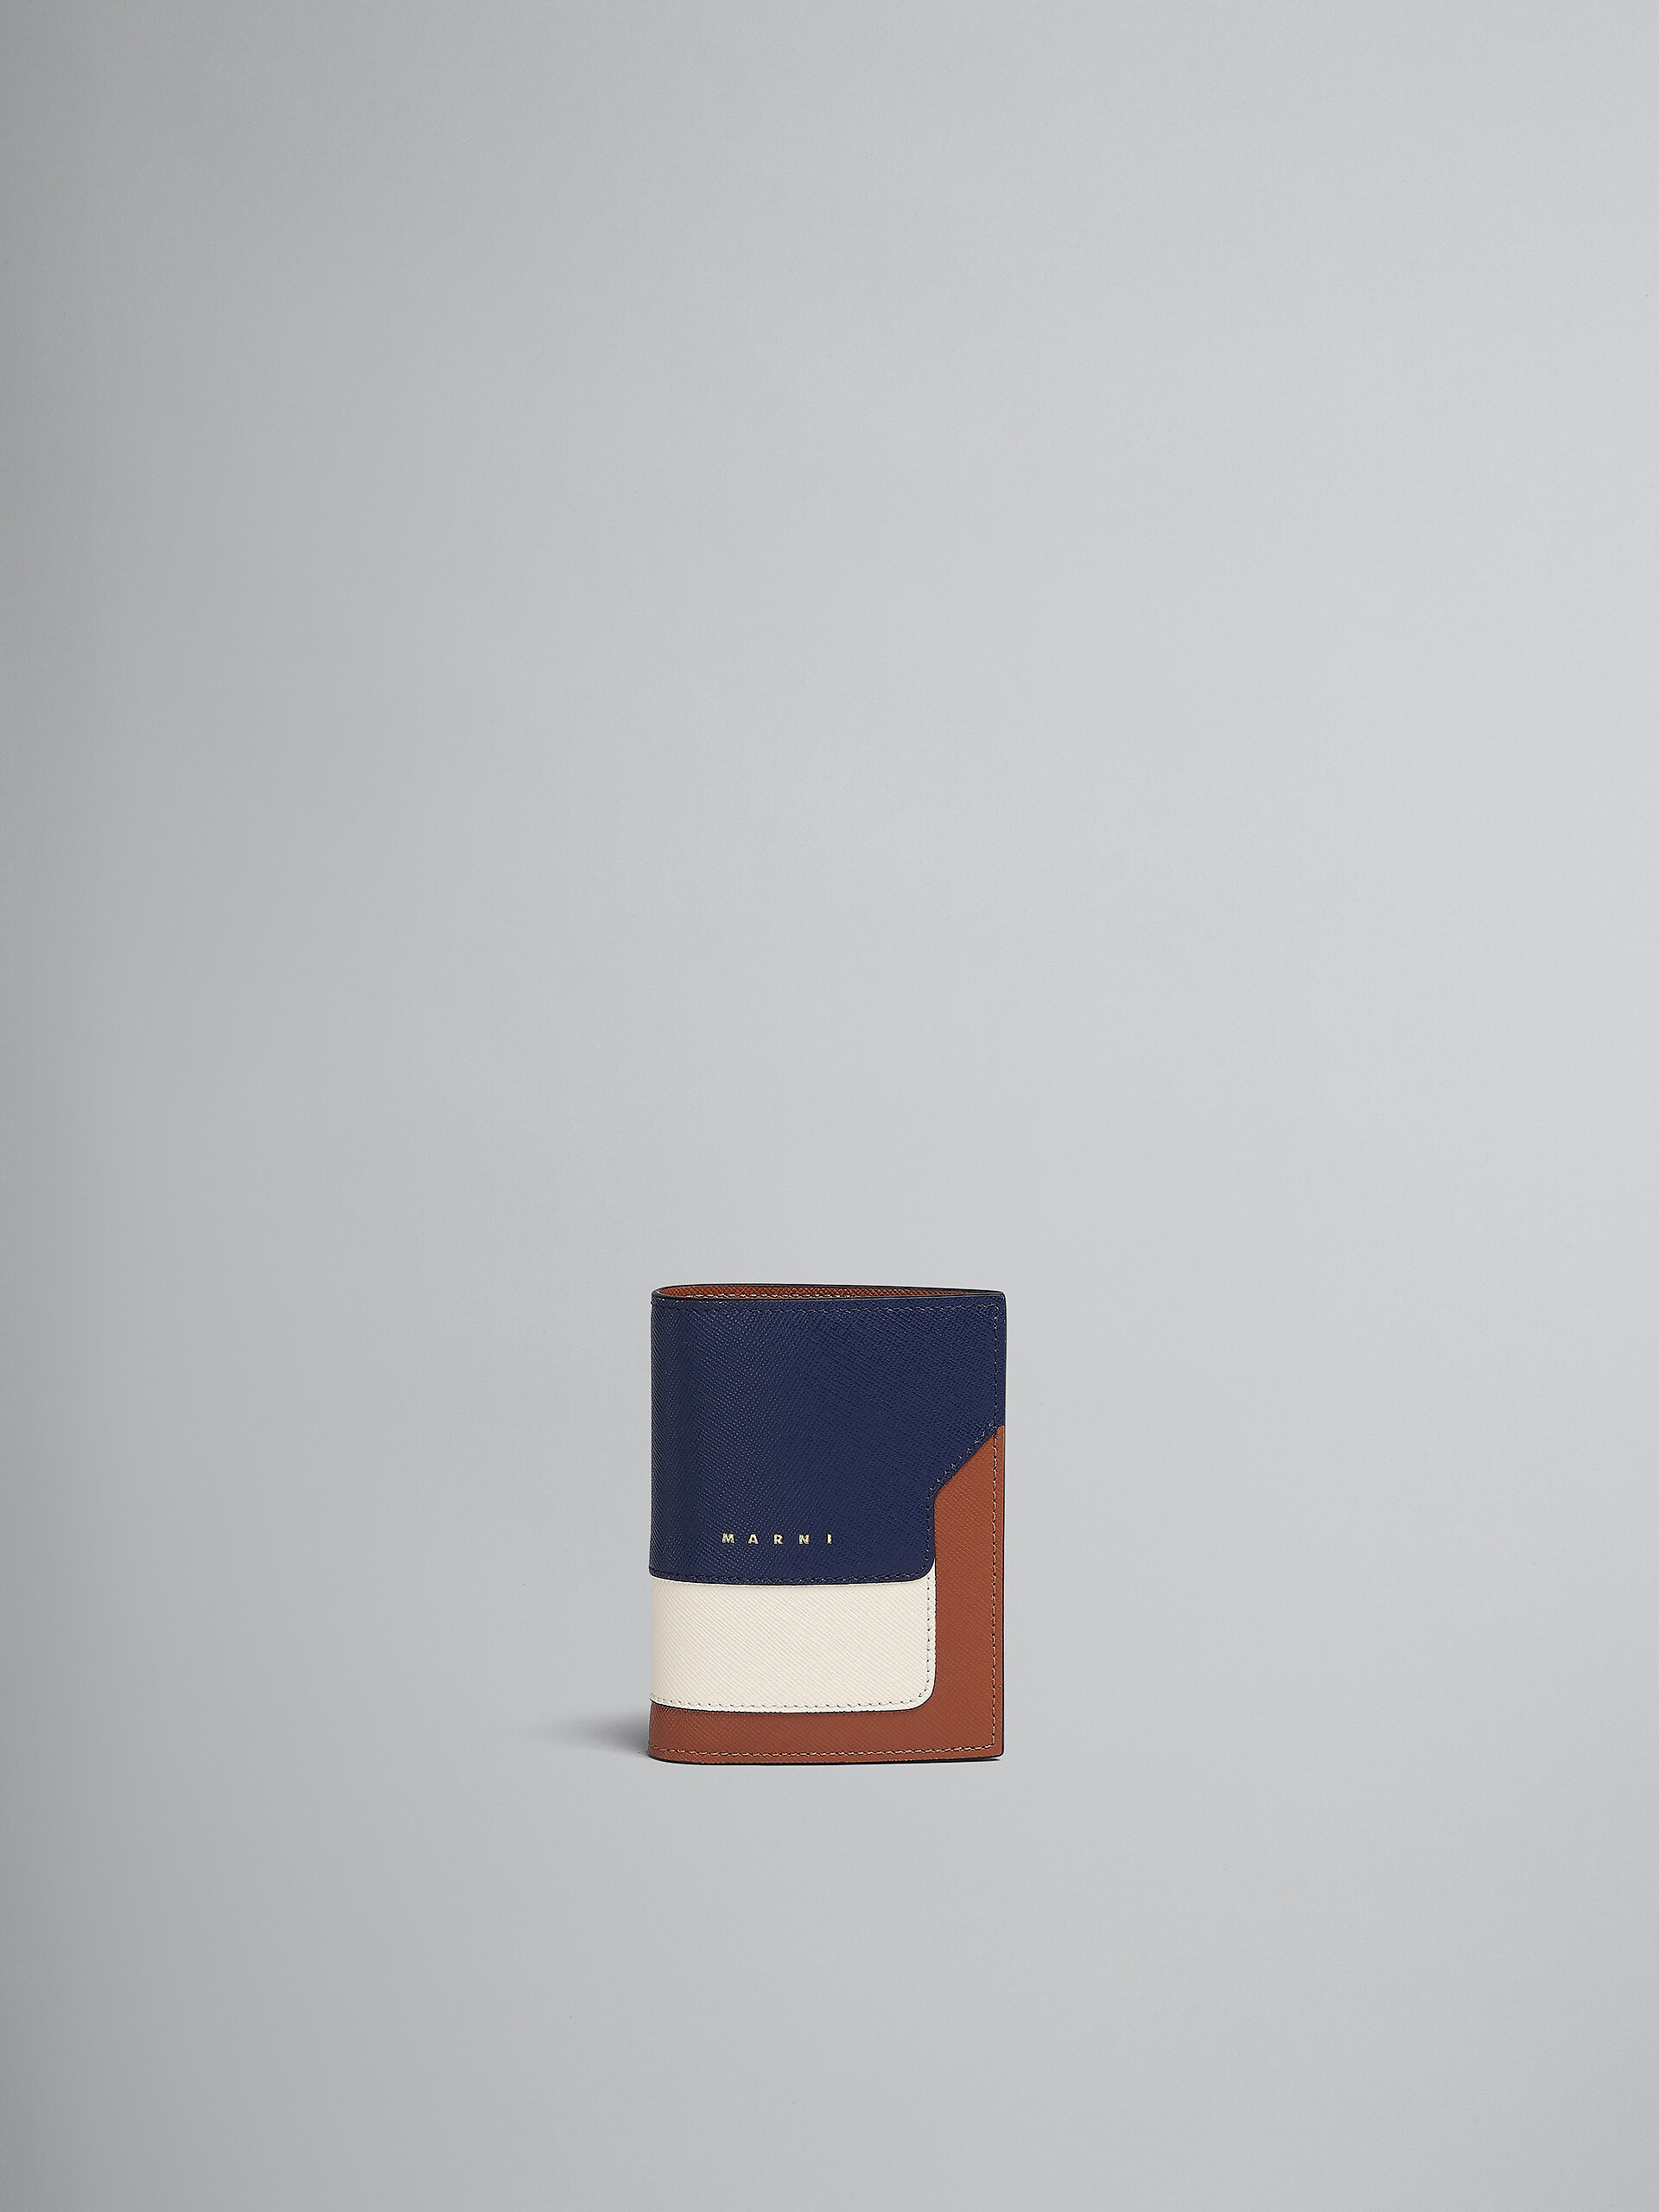 Zweifache Faltbrieftasche aus Saffiano-Leder in Blau, Weiß und Braun - Brieftaschen - Image 1